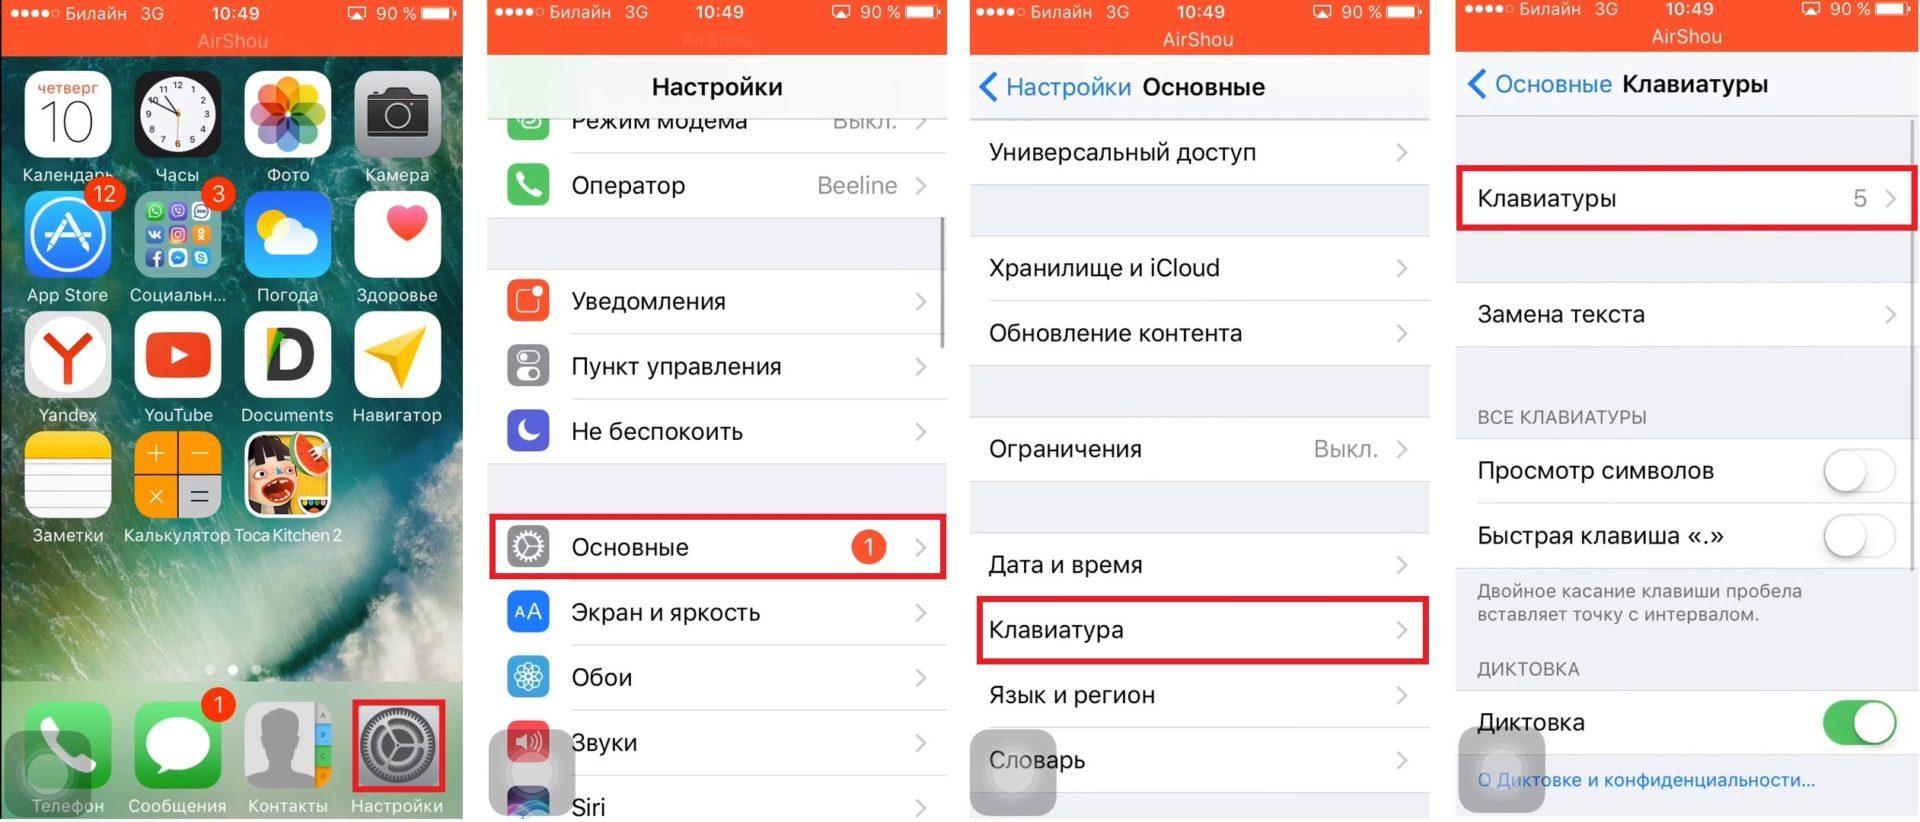 Как поменять телеграмм на русский на айфоне язык фото 74